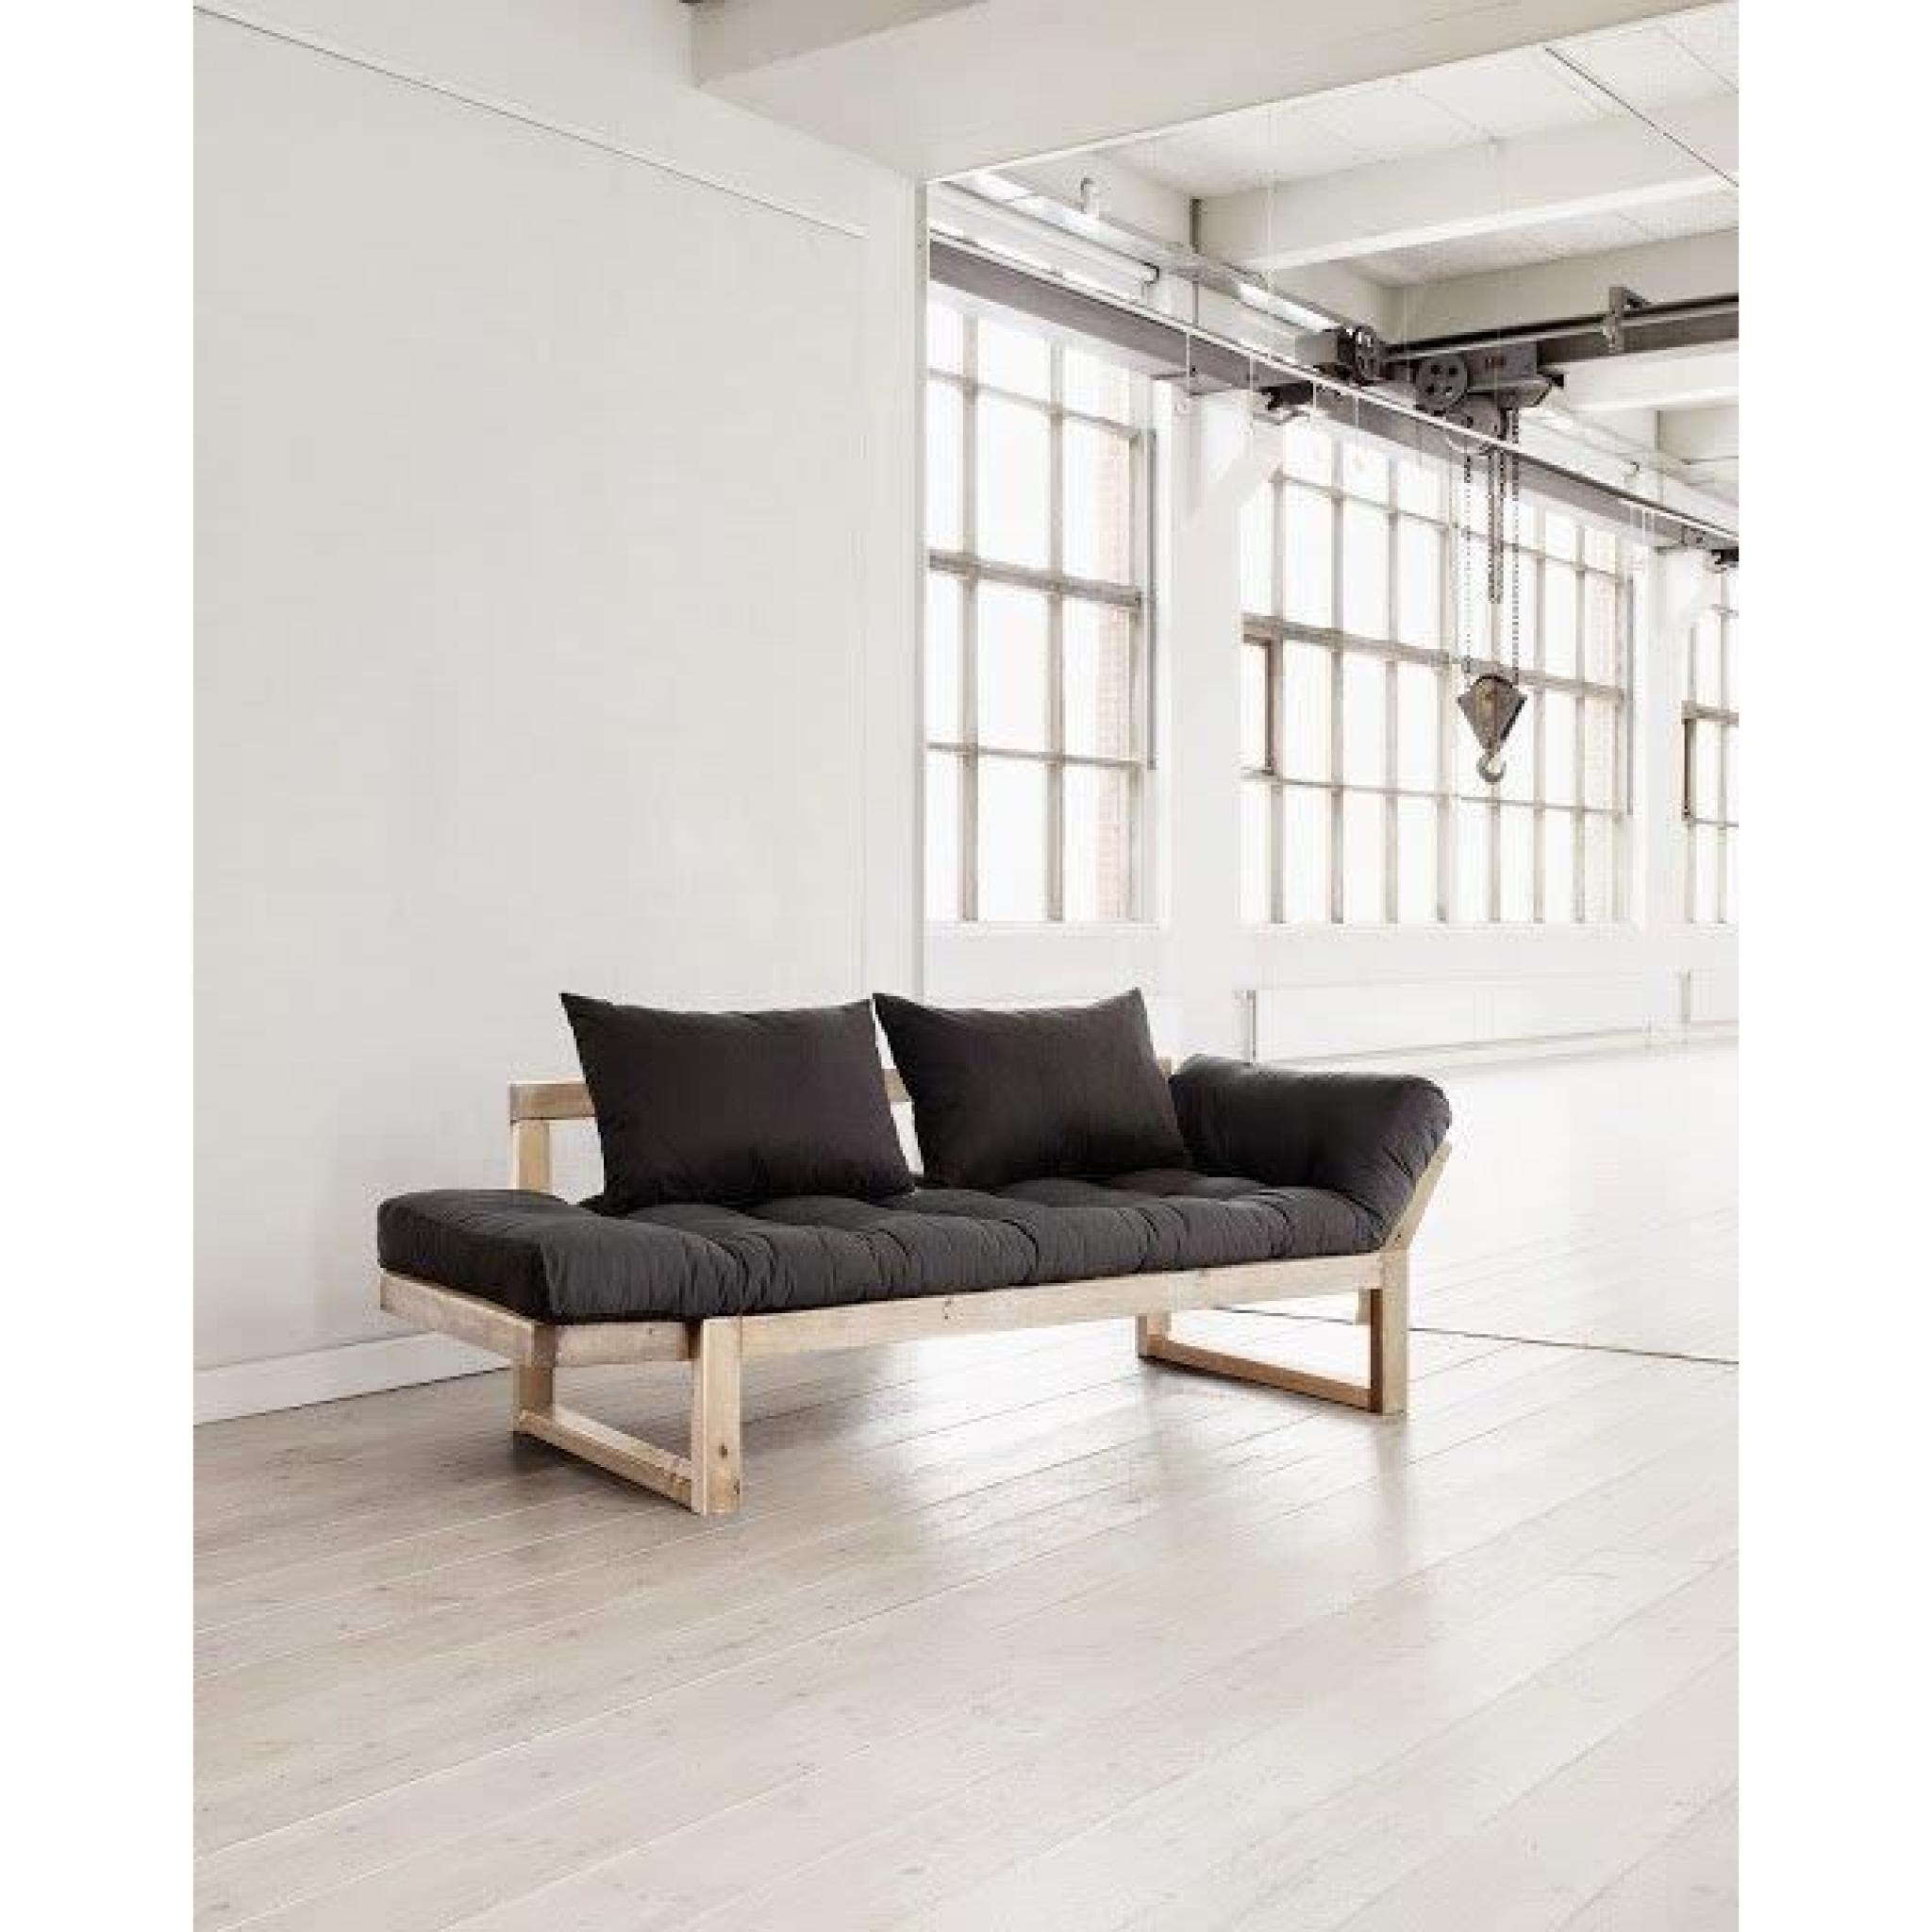 Banquette méridienne style scandinave futon grey graphite EDGE couchage 75*200cm